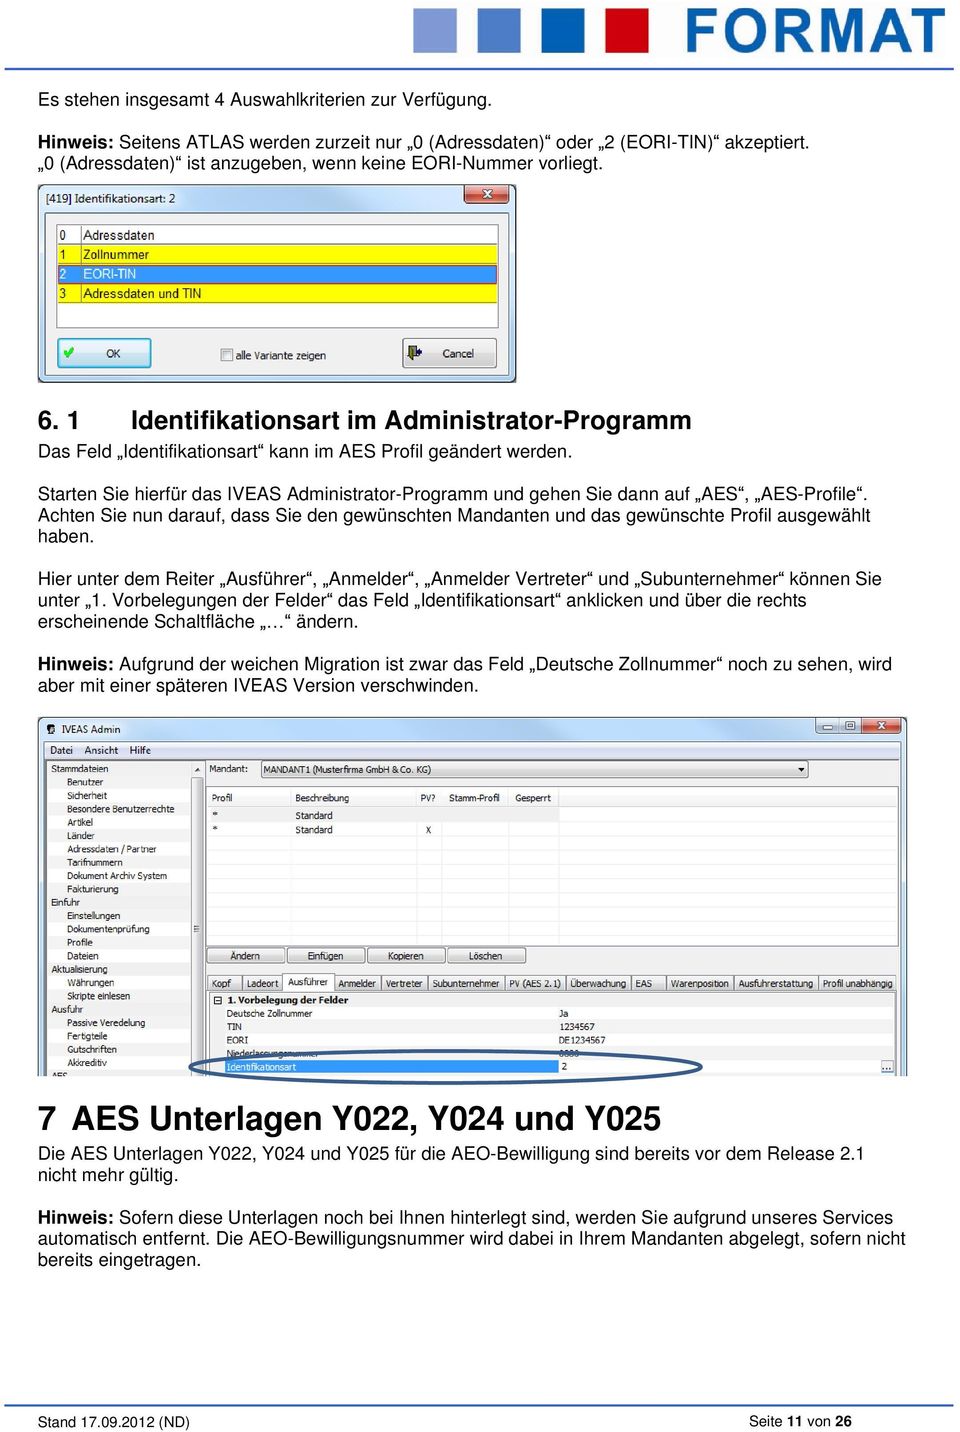 Starten Sie hierfür das IVEAS Administrator-Programm und gehen Sie dann auf AES, AES-Profile. Achten Sie nun darauf, dass Sie den gewünschten Mandanten und das gewünschte Profil ausgewählt haben.